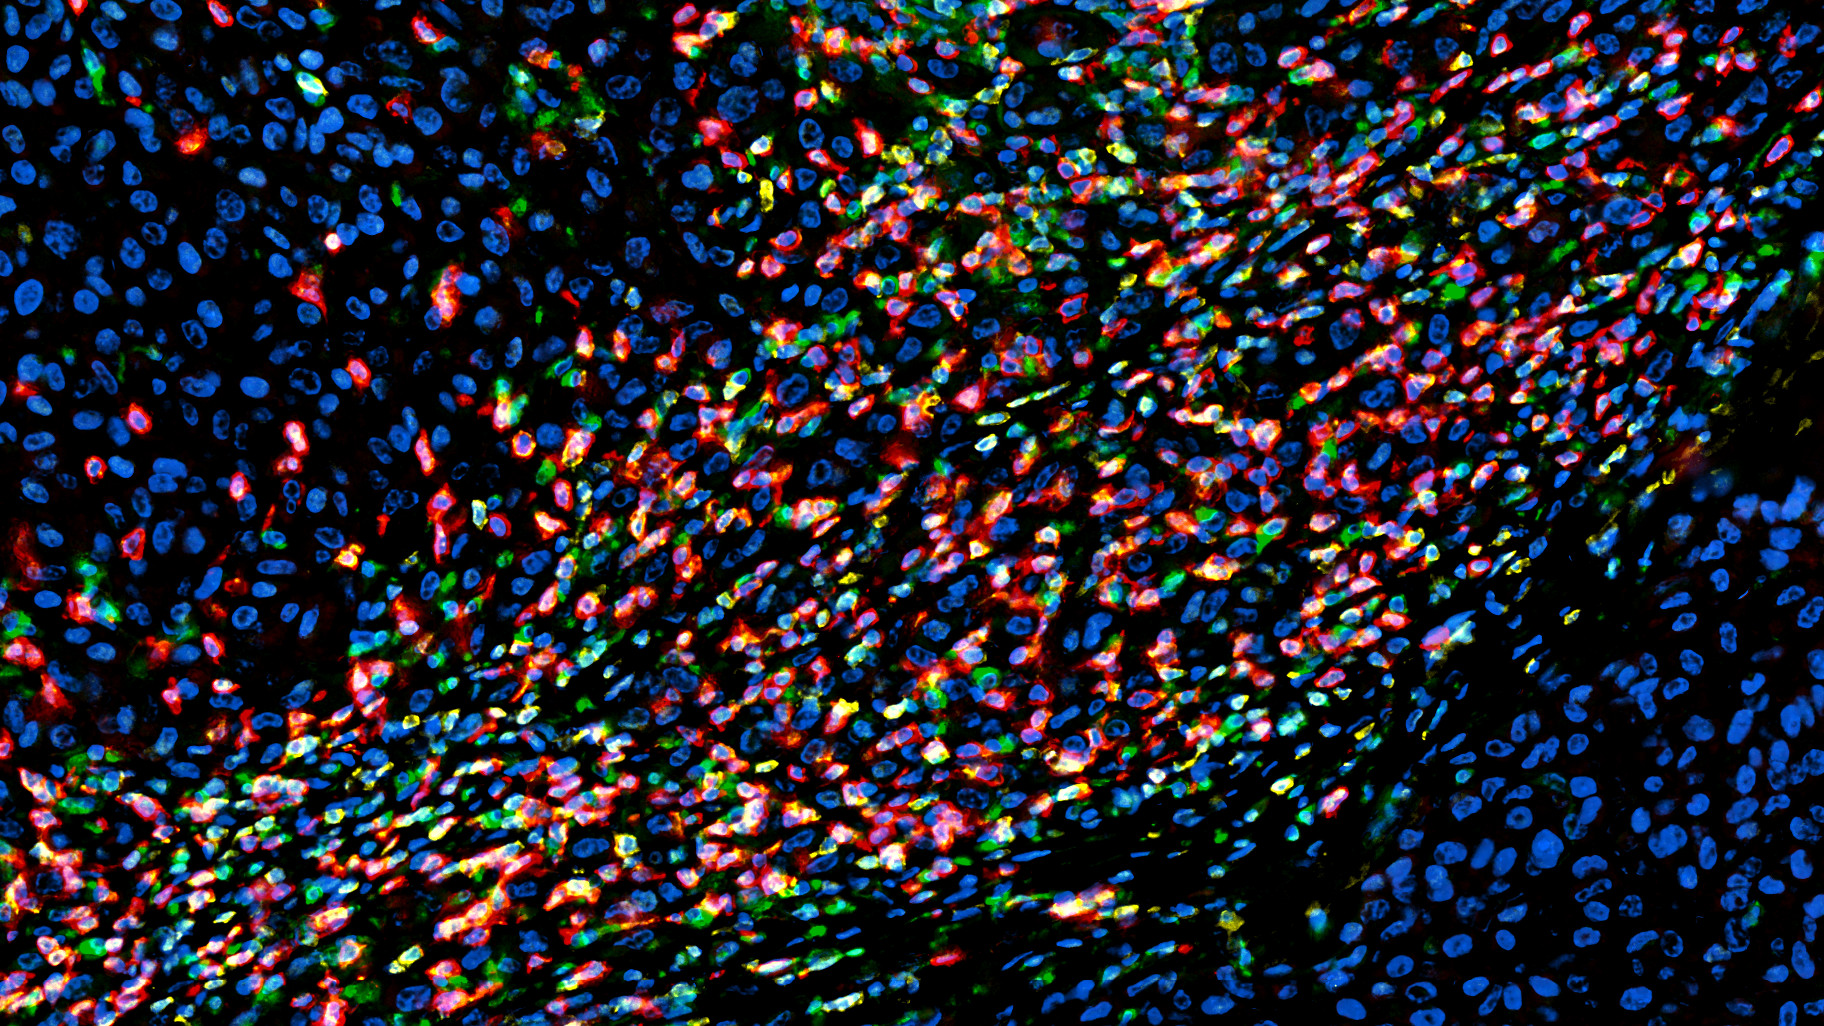 Mikroskopisches Bild humanes Melanomgewebe. Bunt eingefärbt sind Immunzellen, die durch blaues Tumorgewebe fließen. 